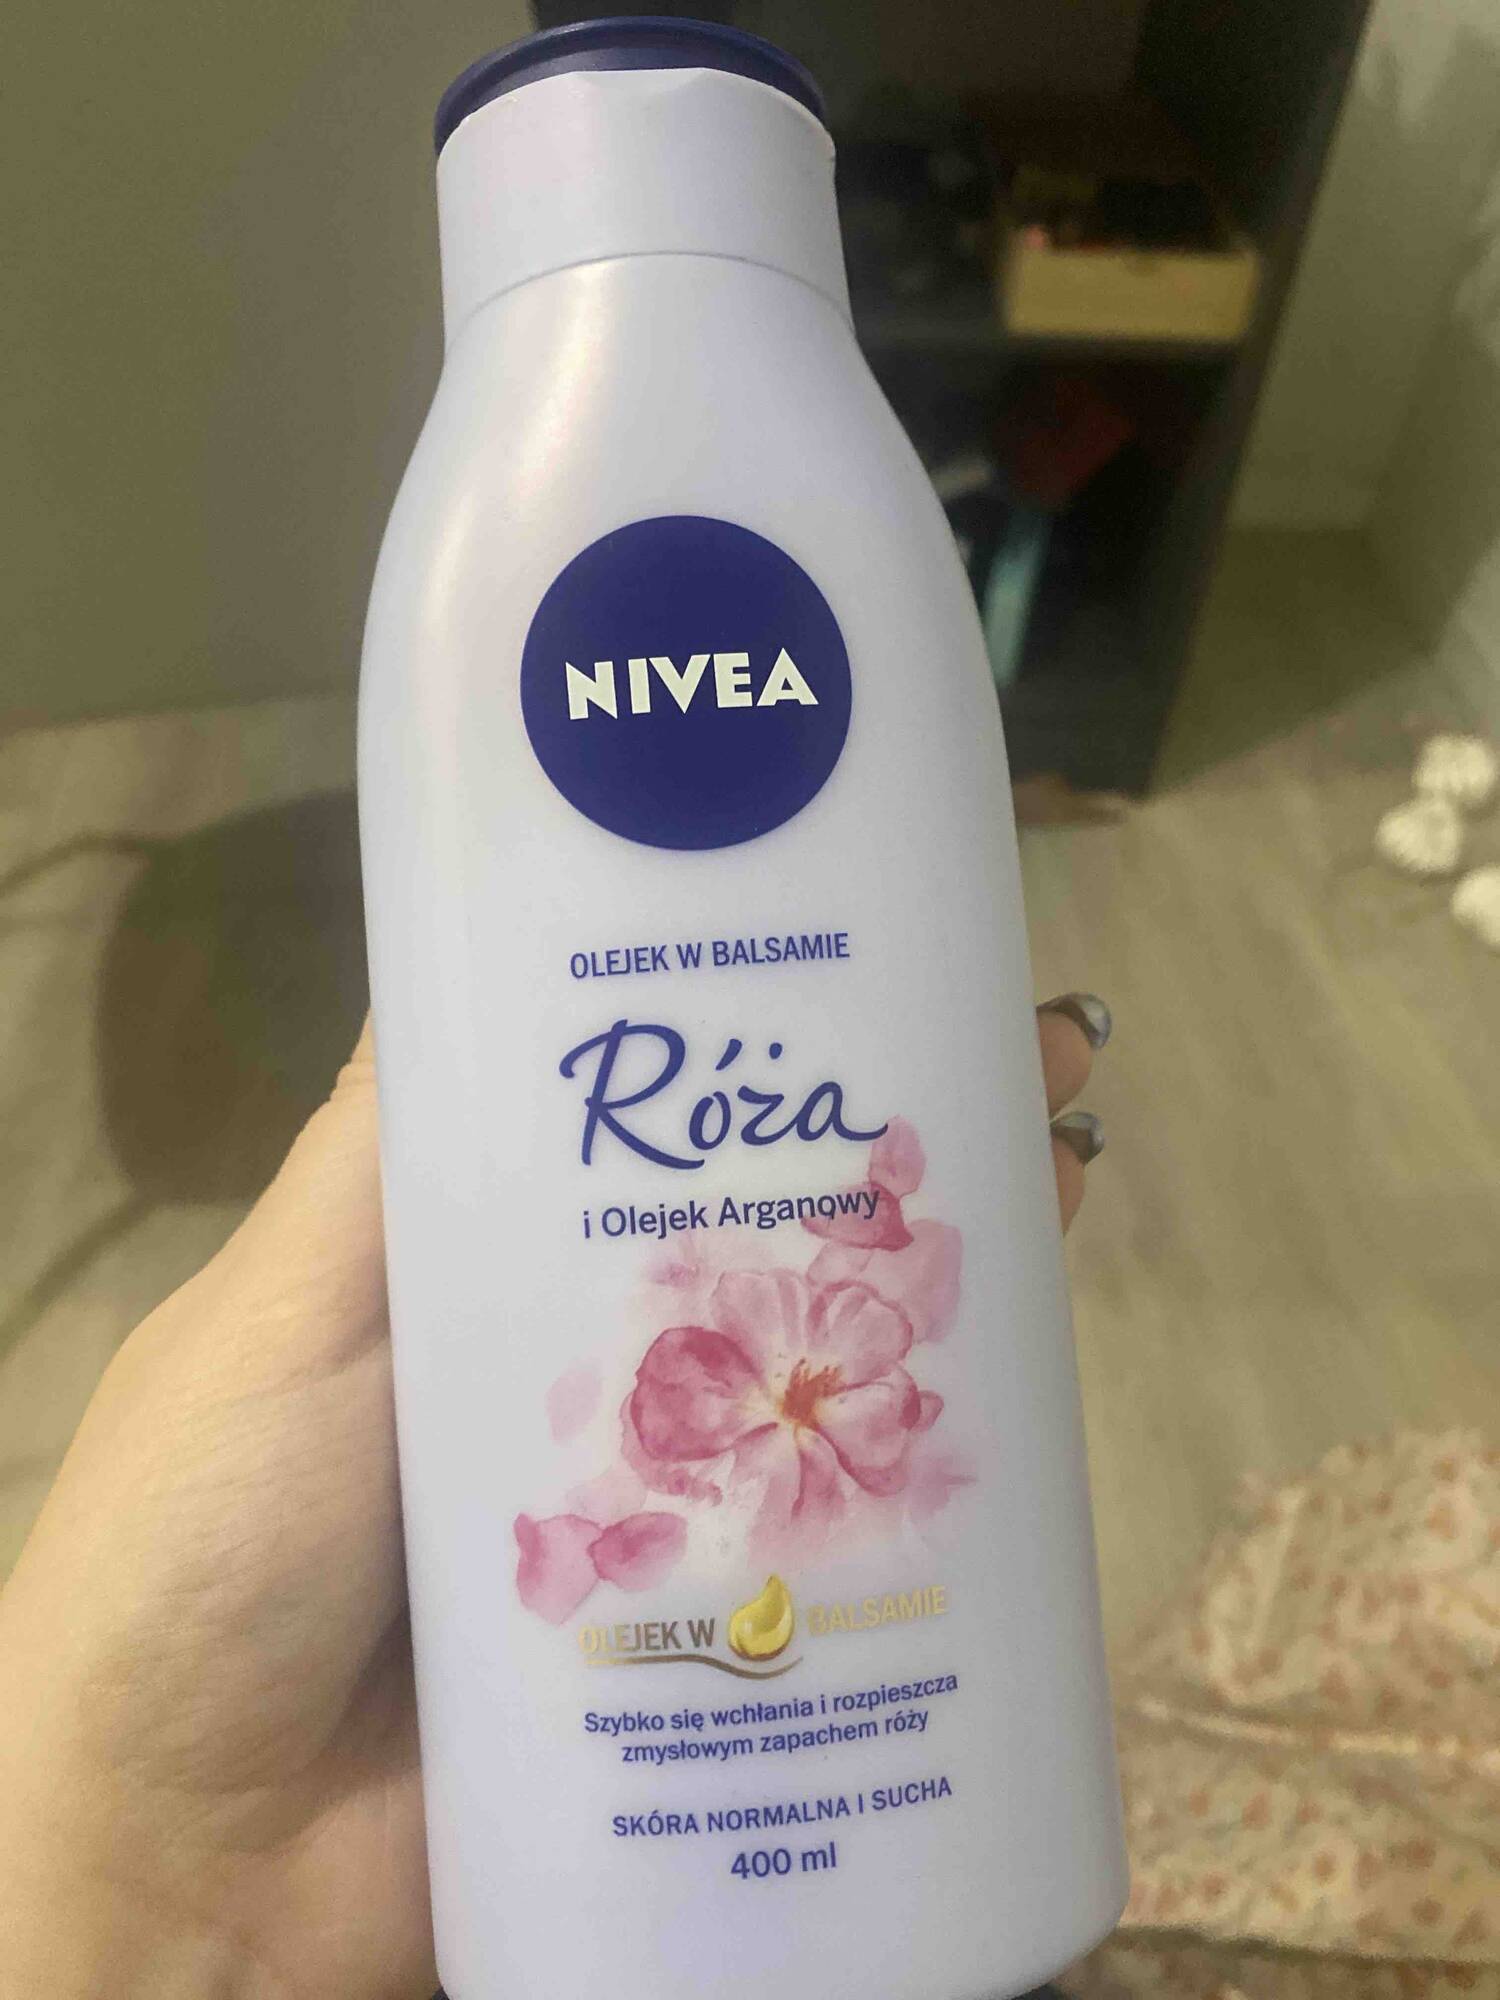 NIVEA - Roza - Olejek w balsamie i olejek arganowy